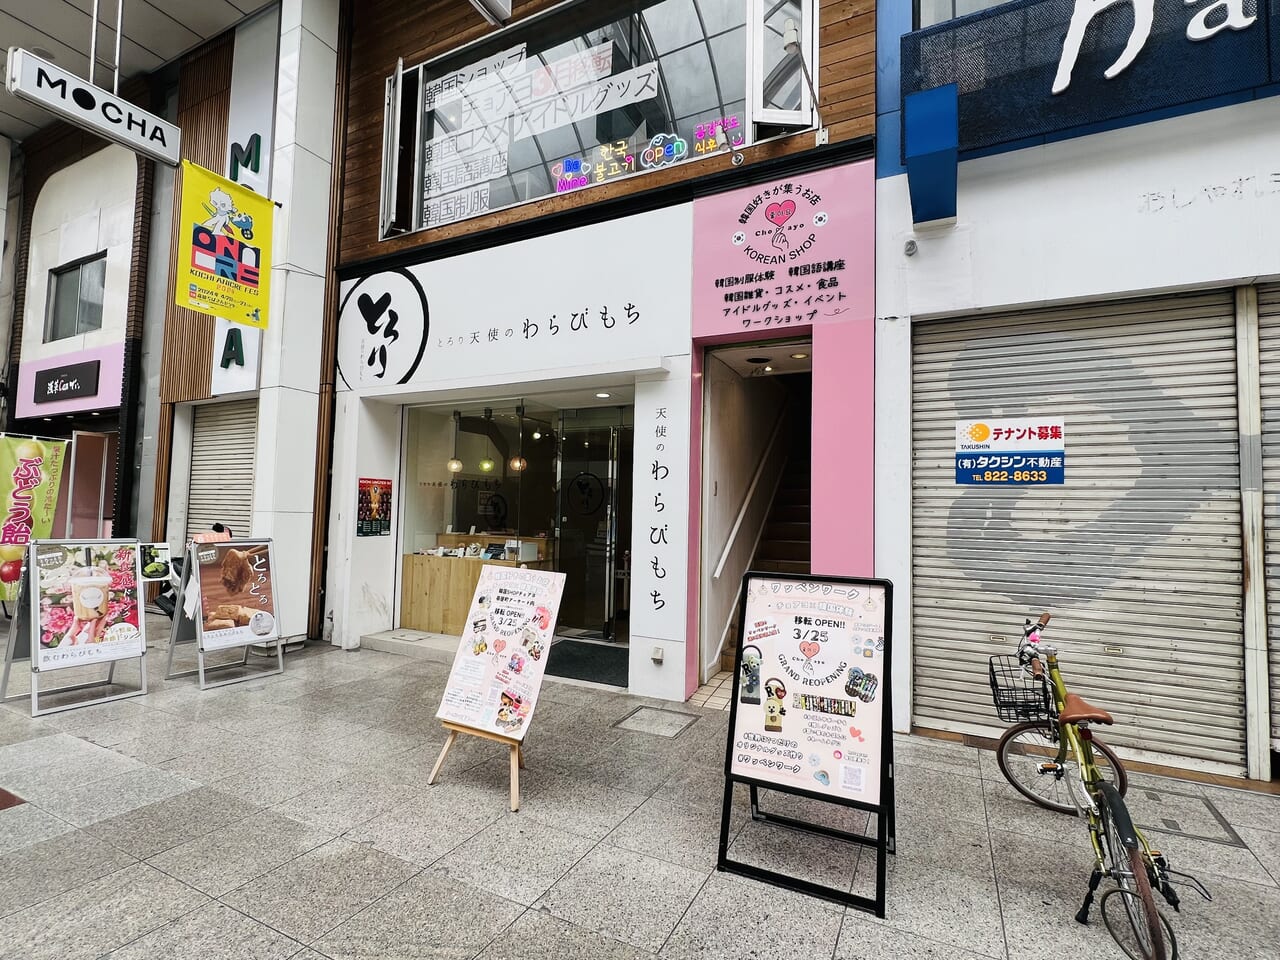 2024年3月25日に帯屋町商店街に移転オープンする予定の韓国ショップ「チョアヨ」の外観